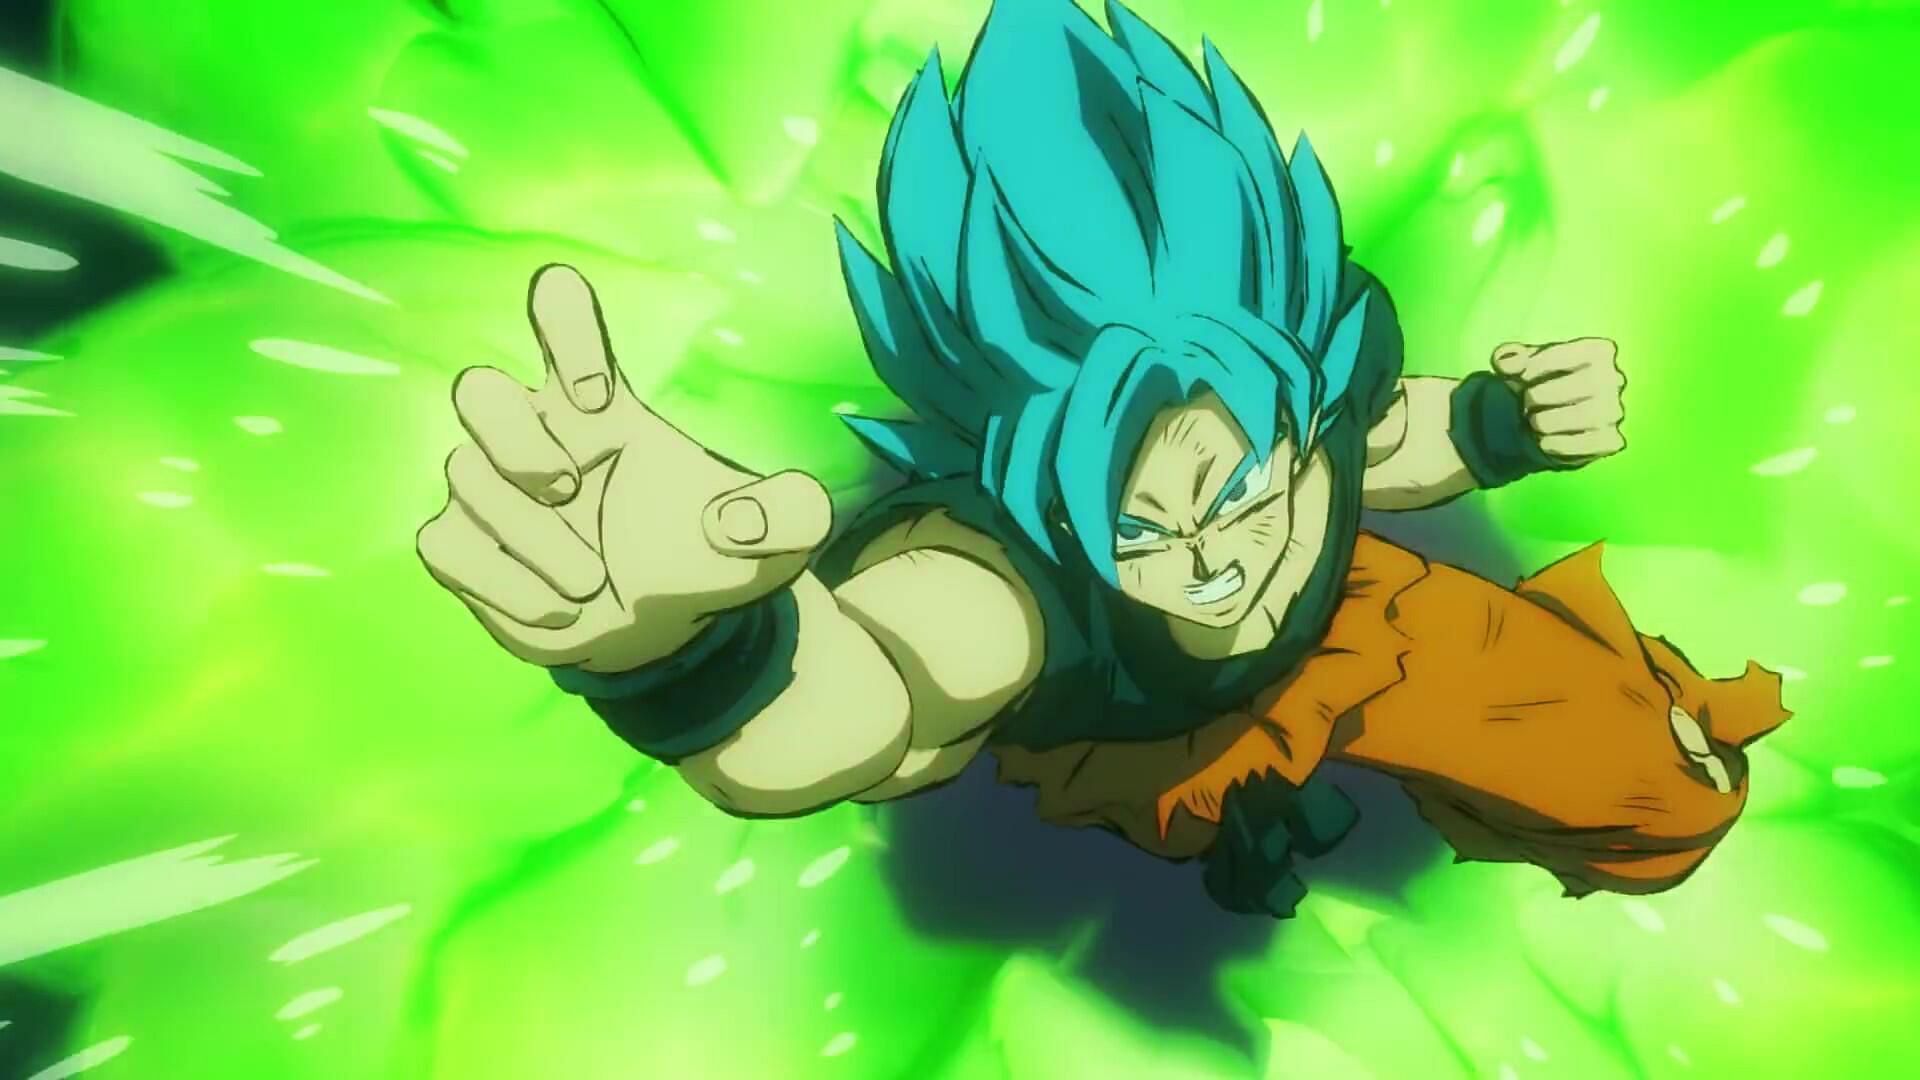 Goku - Super Saiyan blue  Anime dragon ball goku, Anime dragon